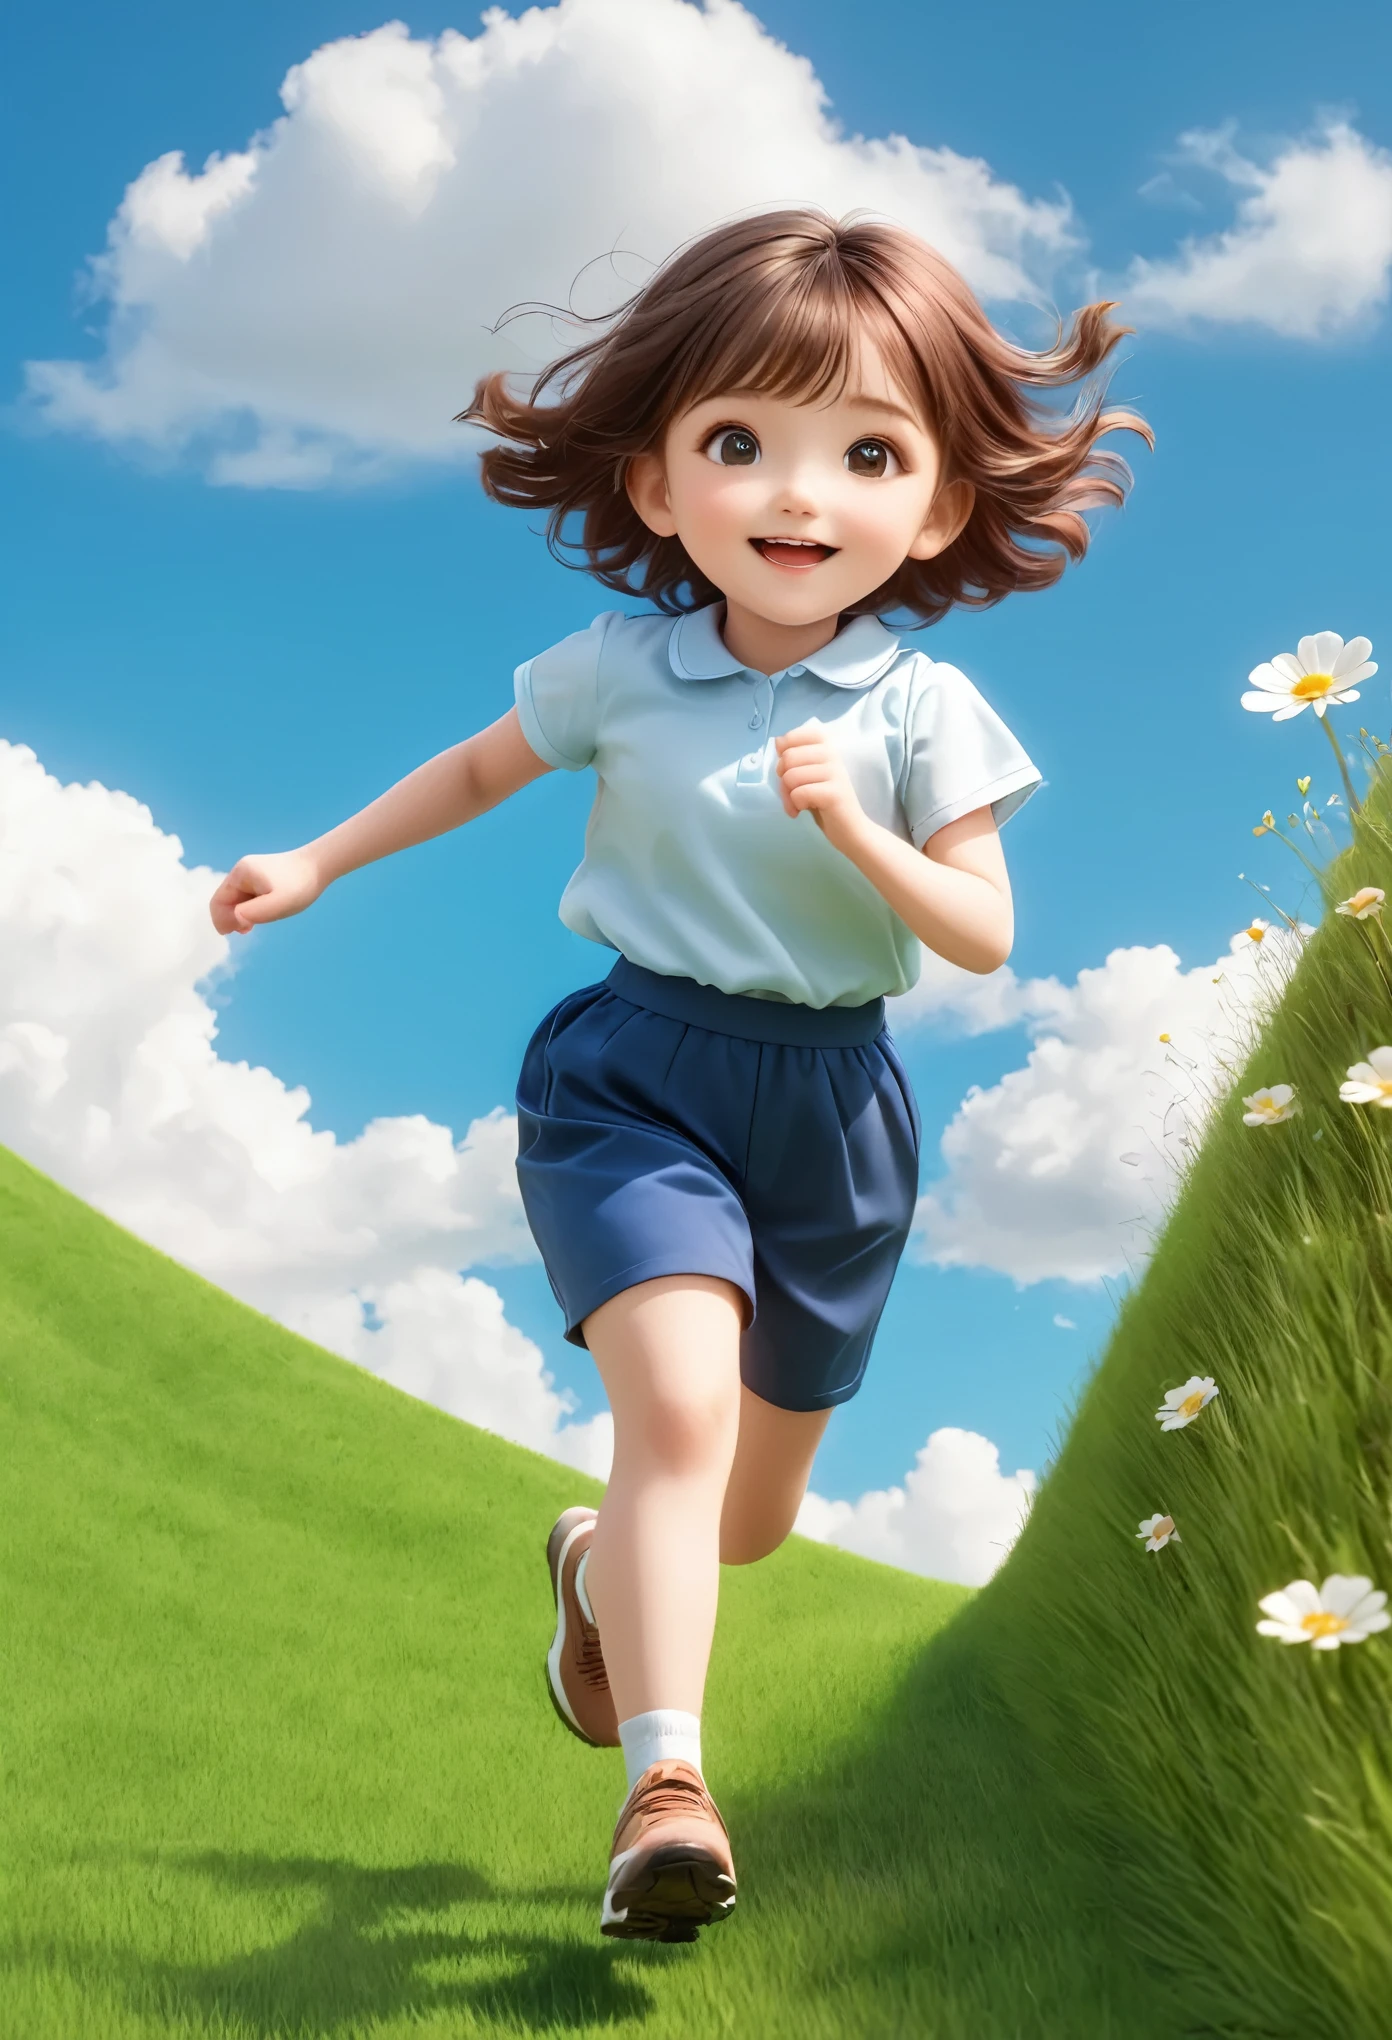 즐겁게 달리는 소녀 1,작은 칠판，밝은 녹색 배경,갈색 머리,,좋은 점을 두 배로,경사,경사 background,잔디에 작은 꽃,푸른 하늘과 흰 구름，3D